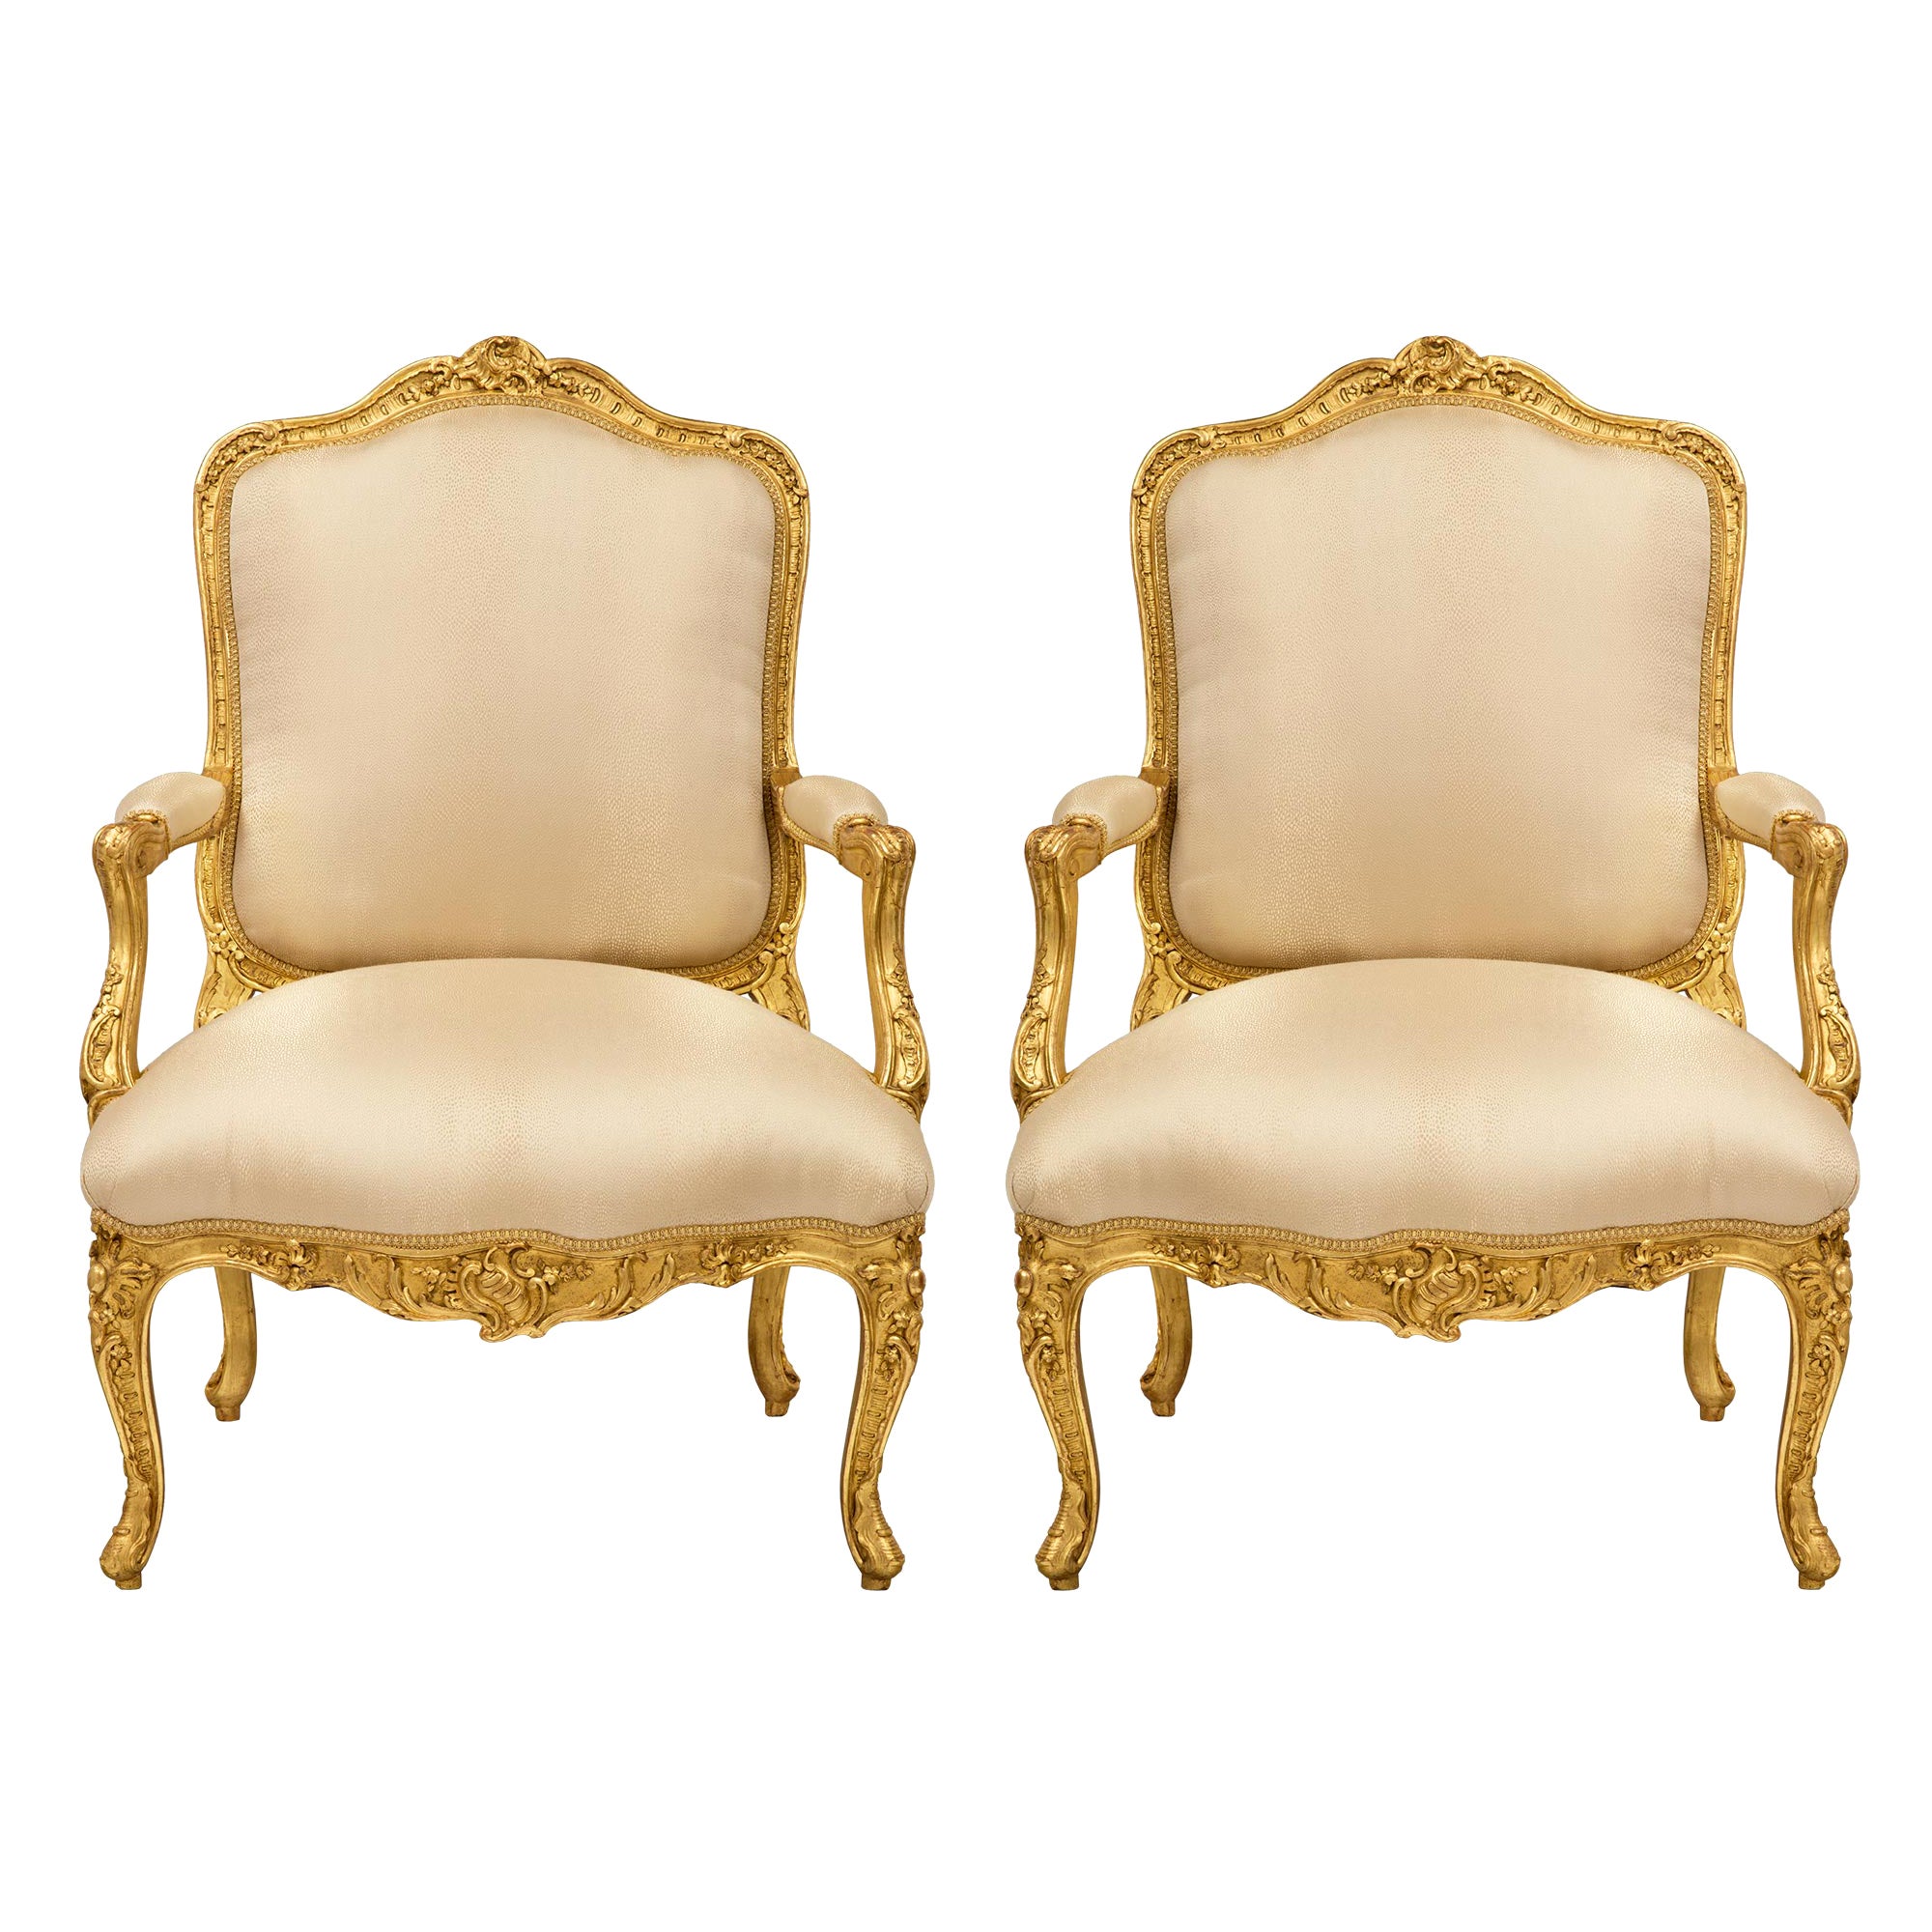 Paire de fauteuils français du XIXe siècle en bois doré de style Louis XV du XIXe siècle